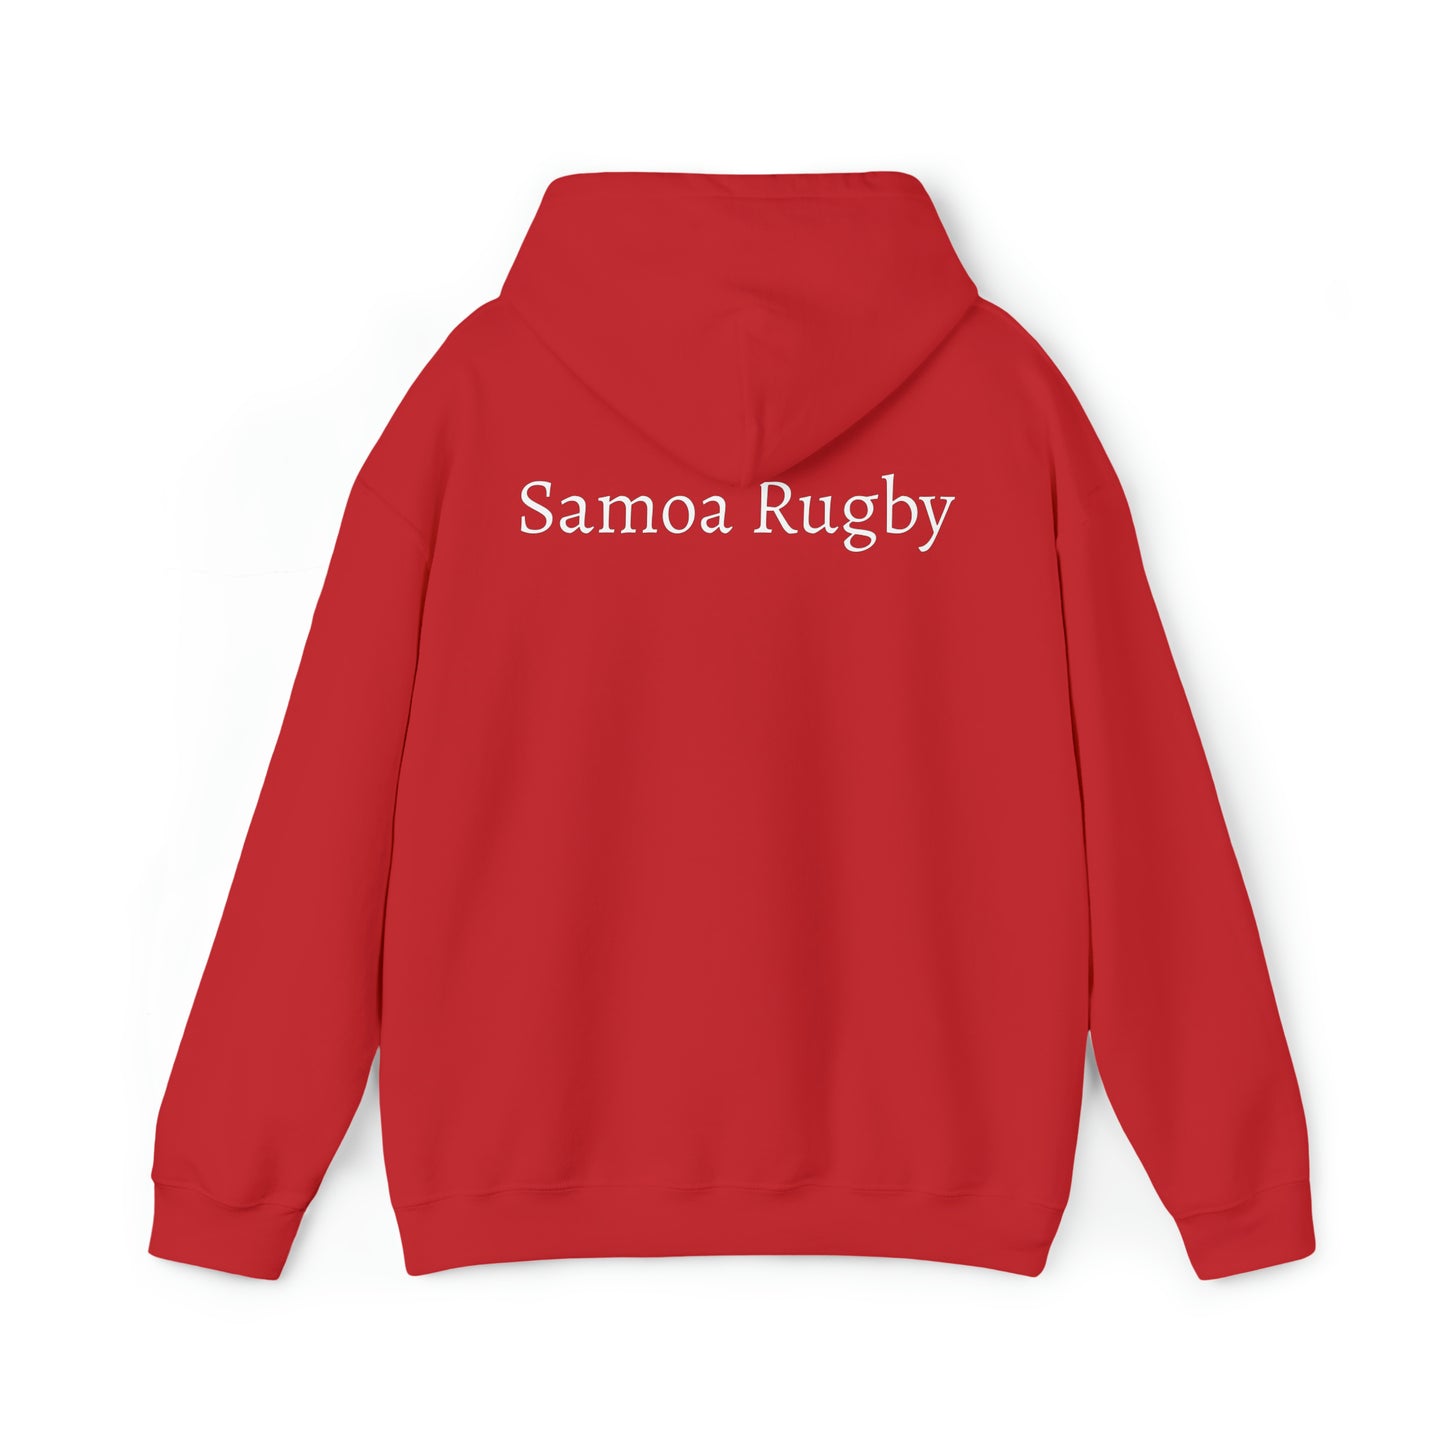 Samoa RWC Photoshoot - dark hoodies